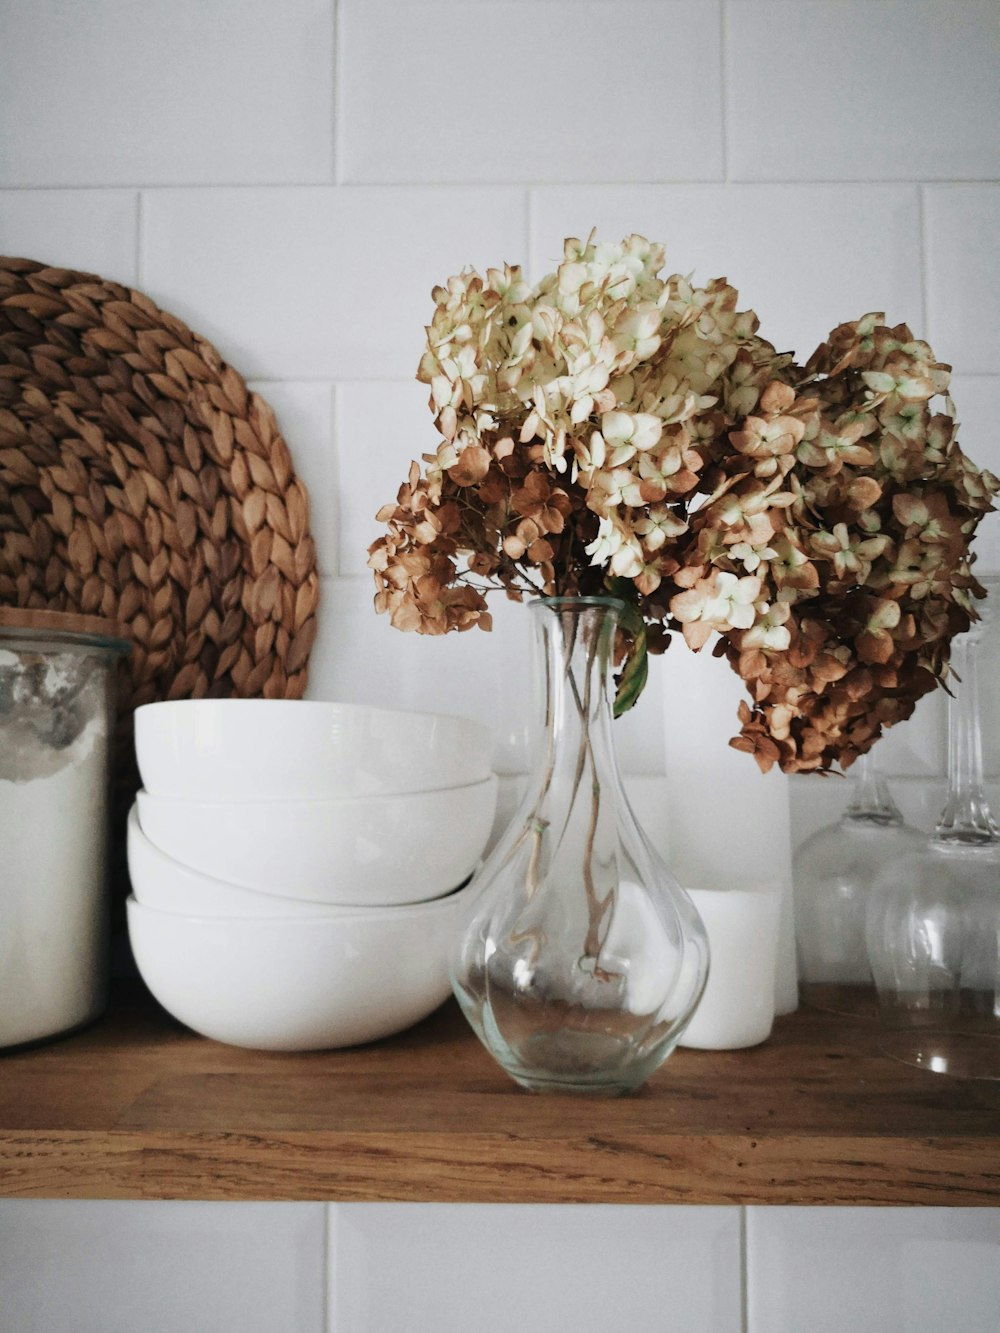 Blumen in der Vase neben dem Geschirr